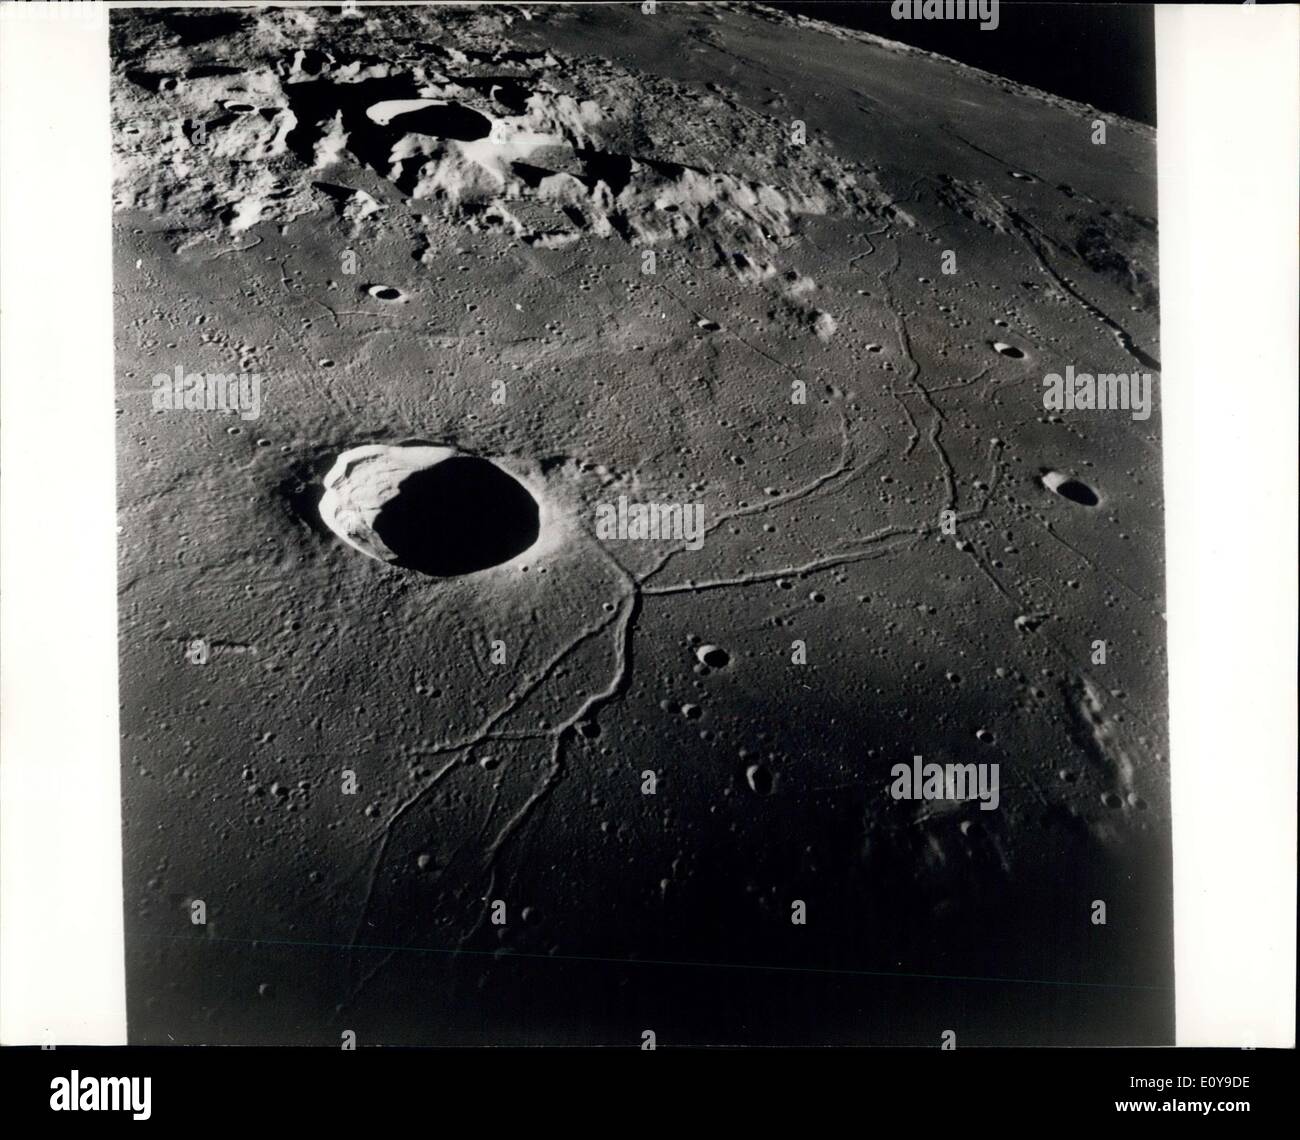 30 maggio 1969 - La Luna di terreno come si vede dall'Apollo 10 astronauti : Un Apollo 10 Northwestward vista obliqua del cratere Triesnecker, centrato nei pressi di 3.6 gradi di longitudine est e 4 gradi di latitudine nord (Fermo immagine con sky in alto a destra). Questa immagine presa dal comando e moduli di servizio, mostra caratteristiche di terreno tipico del nord-est della baia centrale e le highlands lungo il margine settentrionale della baia centrale. Al di là delle highlands, il pavimento liscio del mare di vapori che si estende quasi fino all'orizzonte alcuni 600 chilometri (375 statua miglia) dal veicolo spaziale Foto Stock